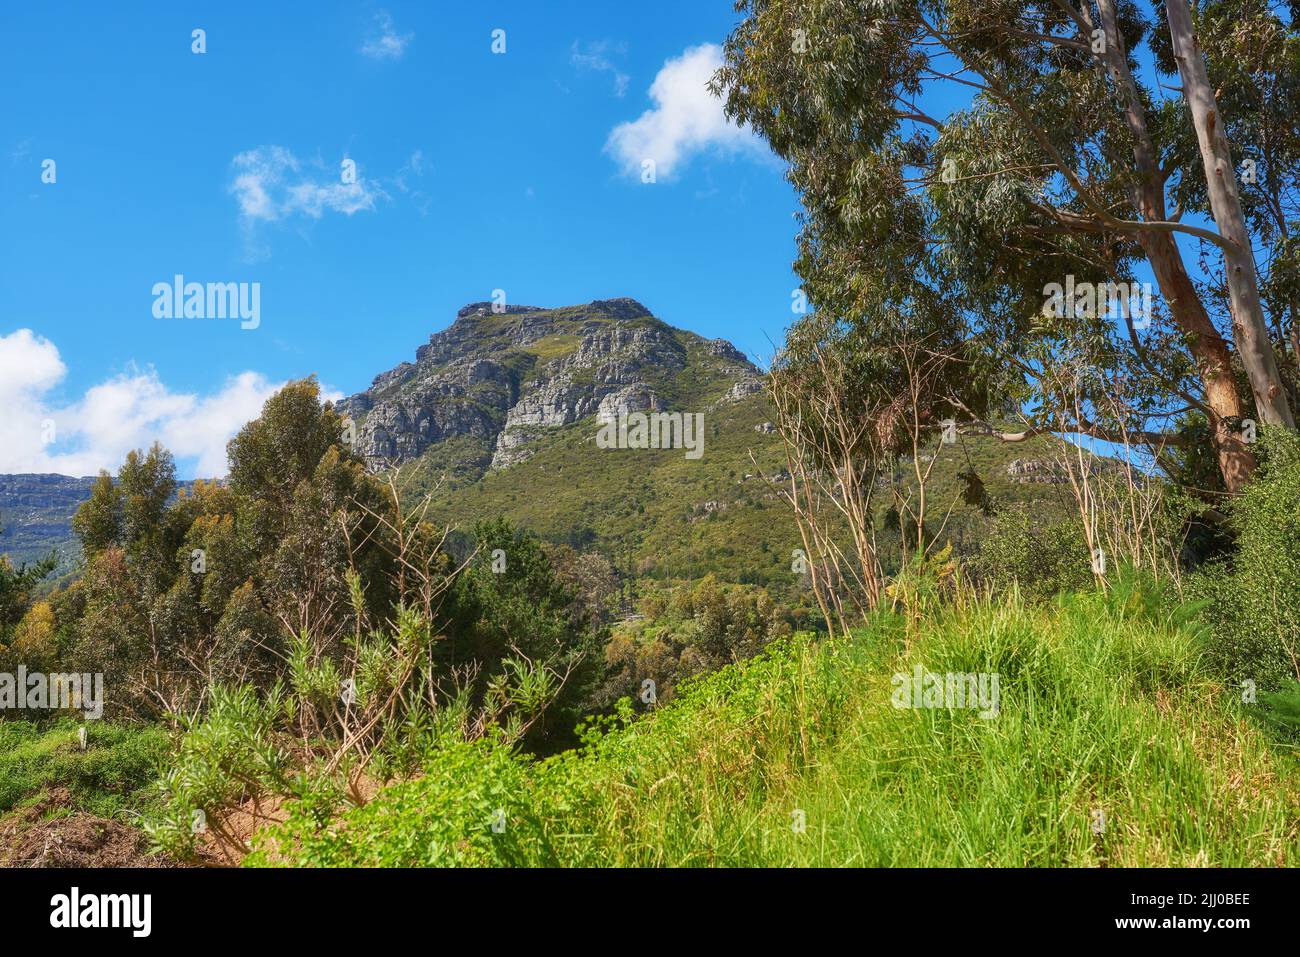 Grüne Baumpflanzen auf den Bergen mit blauem Himmel Kopieplatz. Schöne Artenvielfalt in einer Naturlandschaft wilde einheimische Vegetation, Sträucher und Bäume Stockfoto